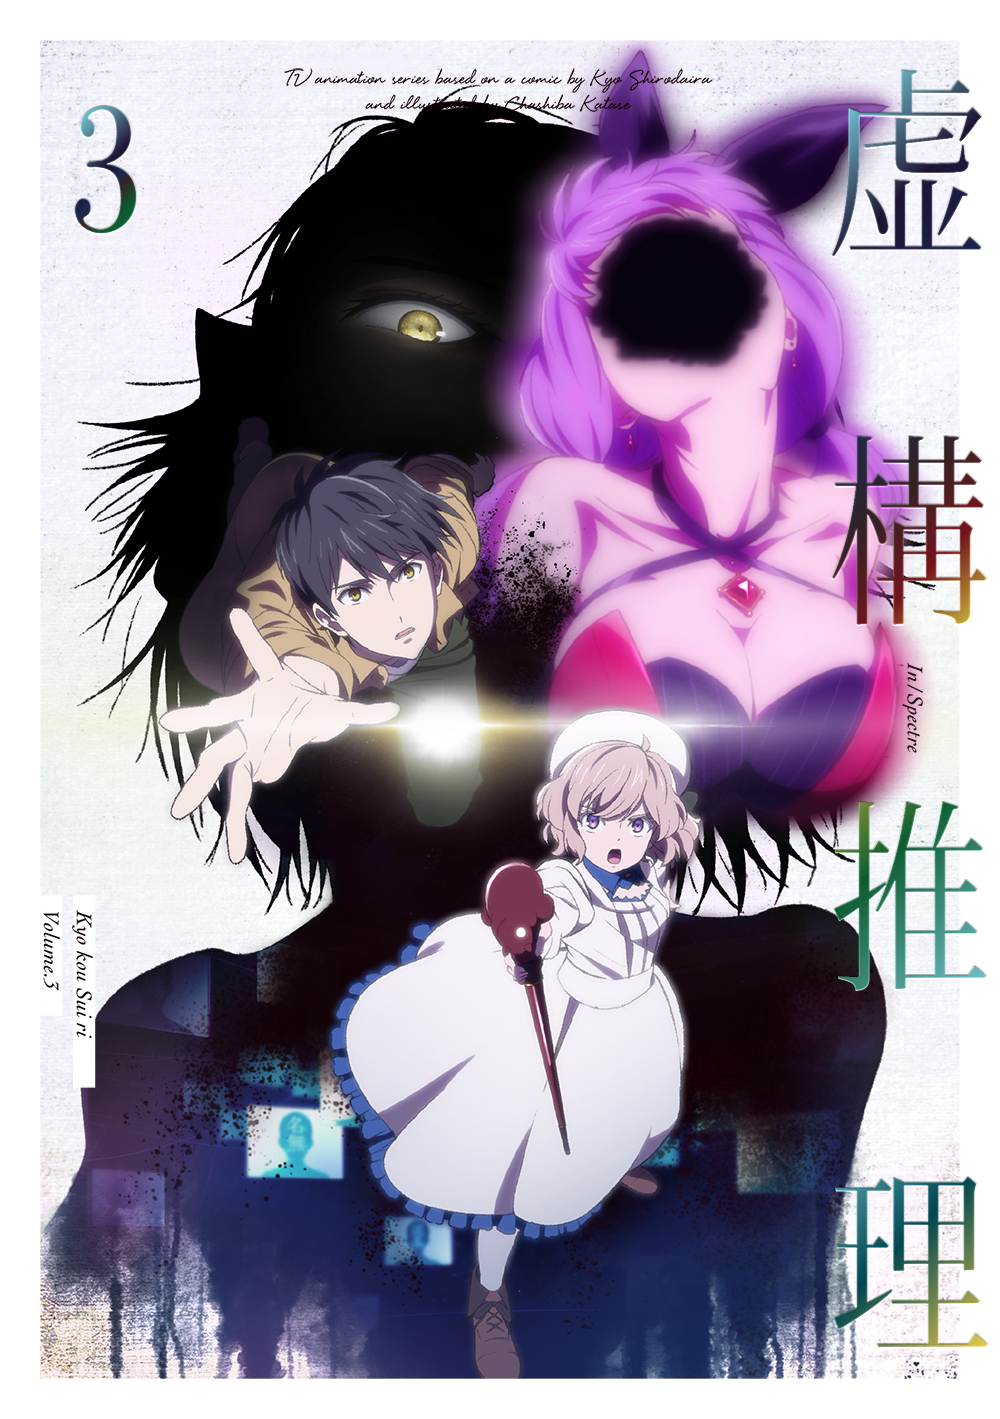 Crunchyroll Kyokou Suiri (In/Spectre) Season 2 - AnimeSuki Forum